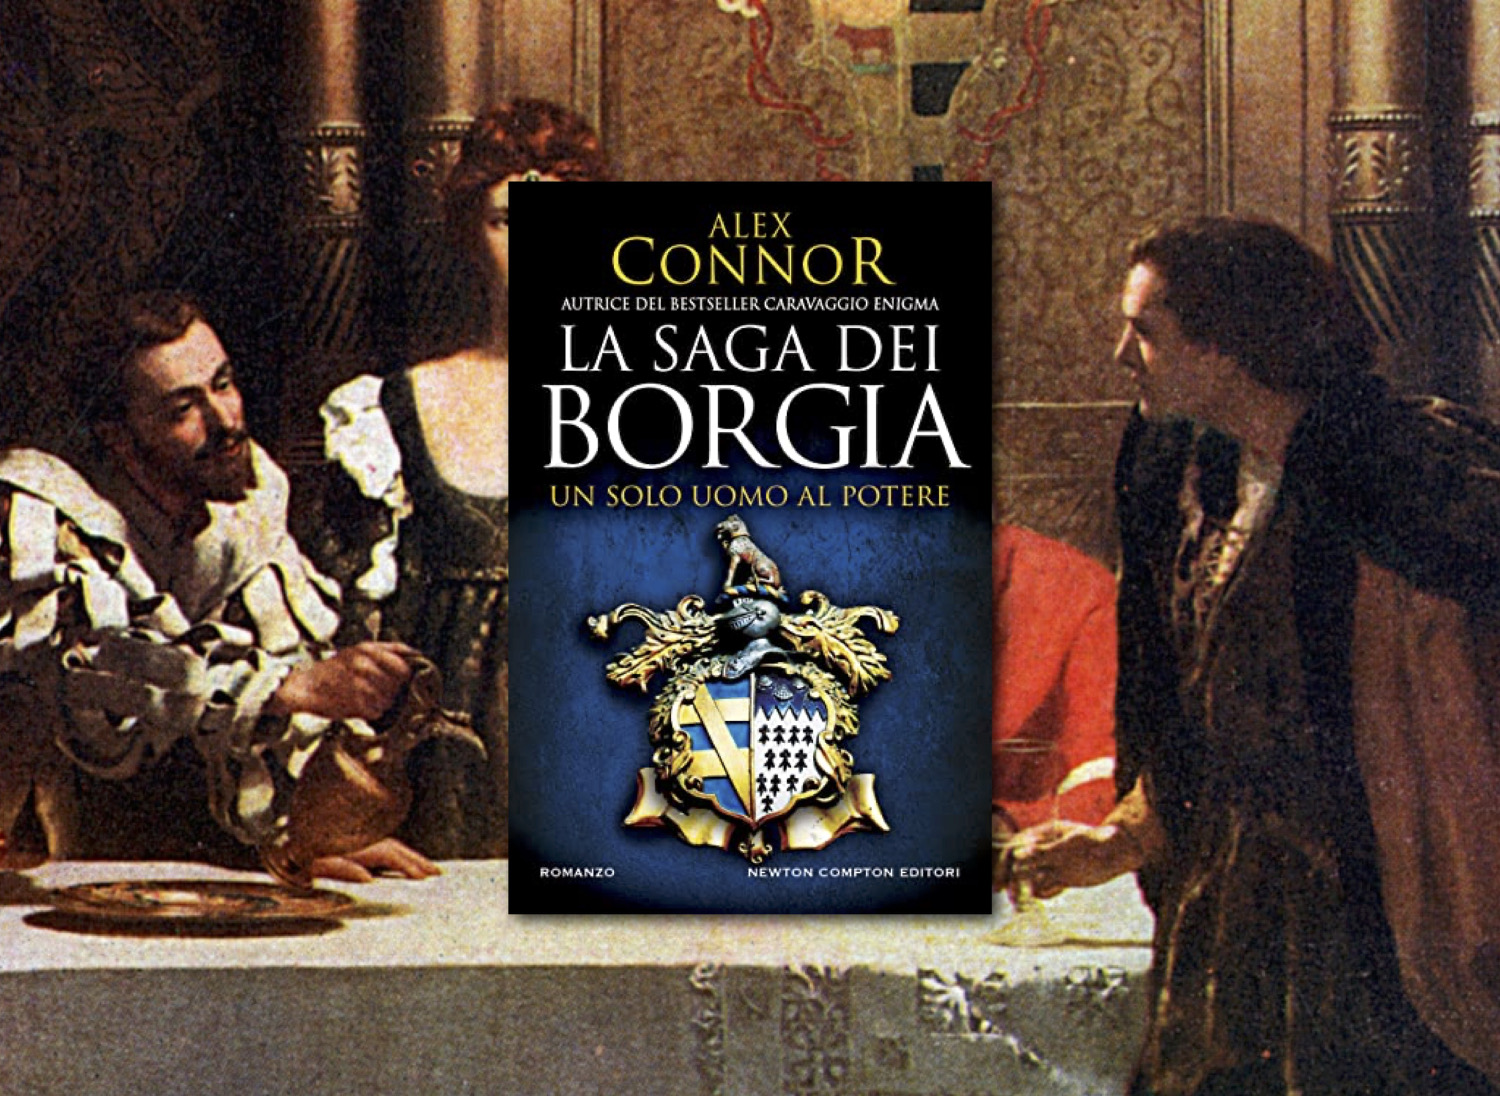 La saga dei Borgia. Un solo uomo al potere. La recensione di Claudio Mattia Serafin del romanzo di Alex Connor pubblicato da Newton Compton Editori.